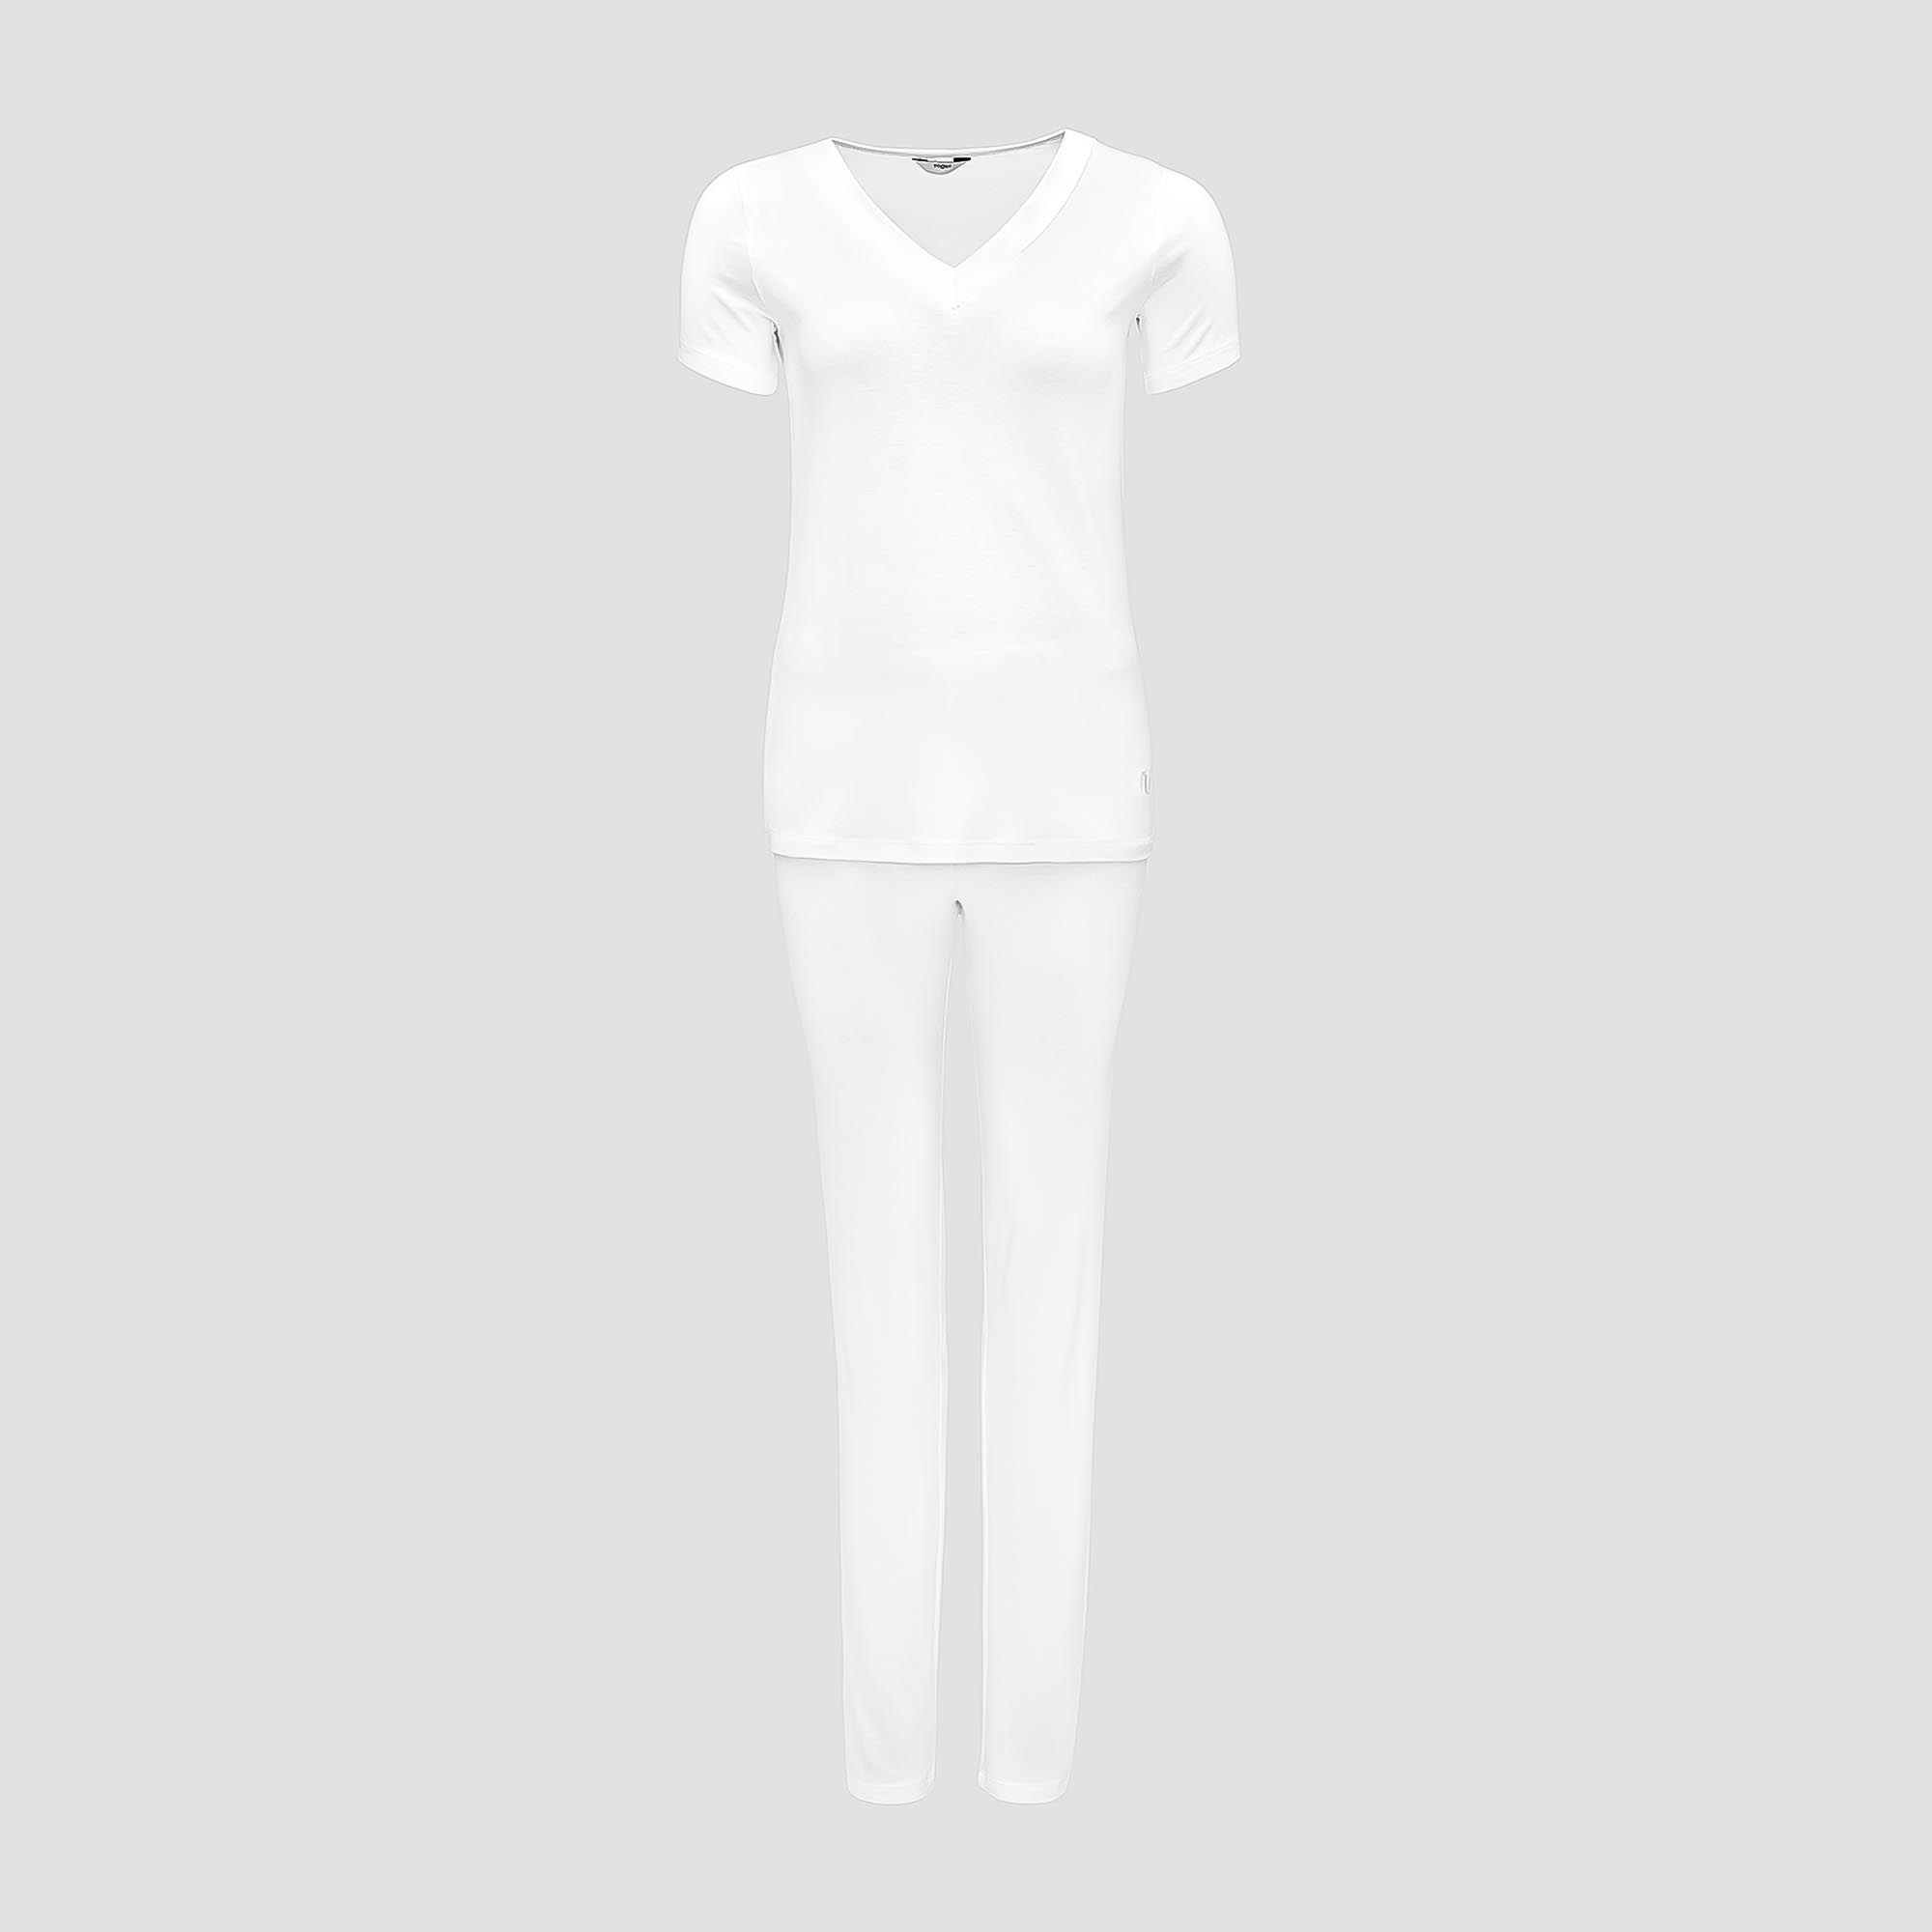 Пижама Togas Ингелла белая женская XXL(52) 2 предмета пижама брюки